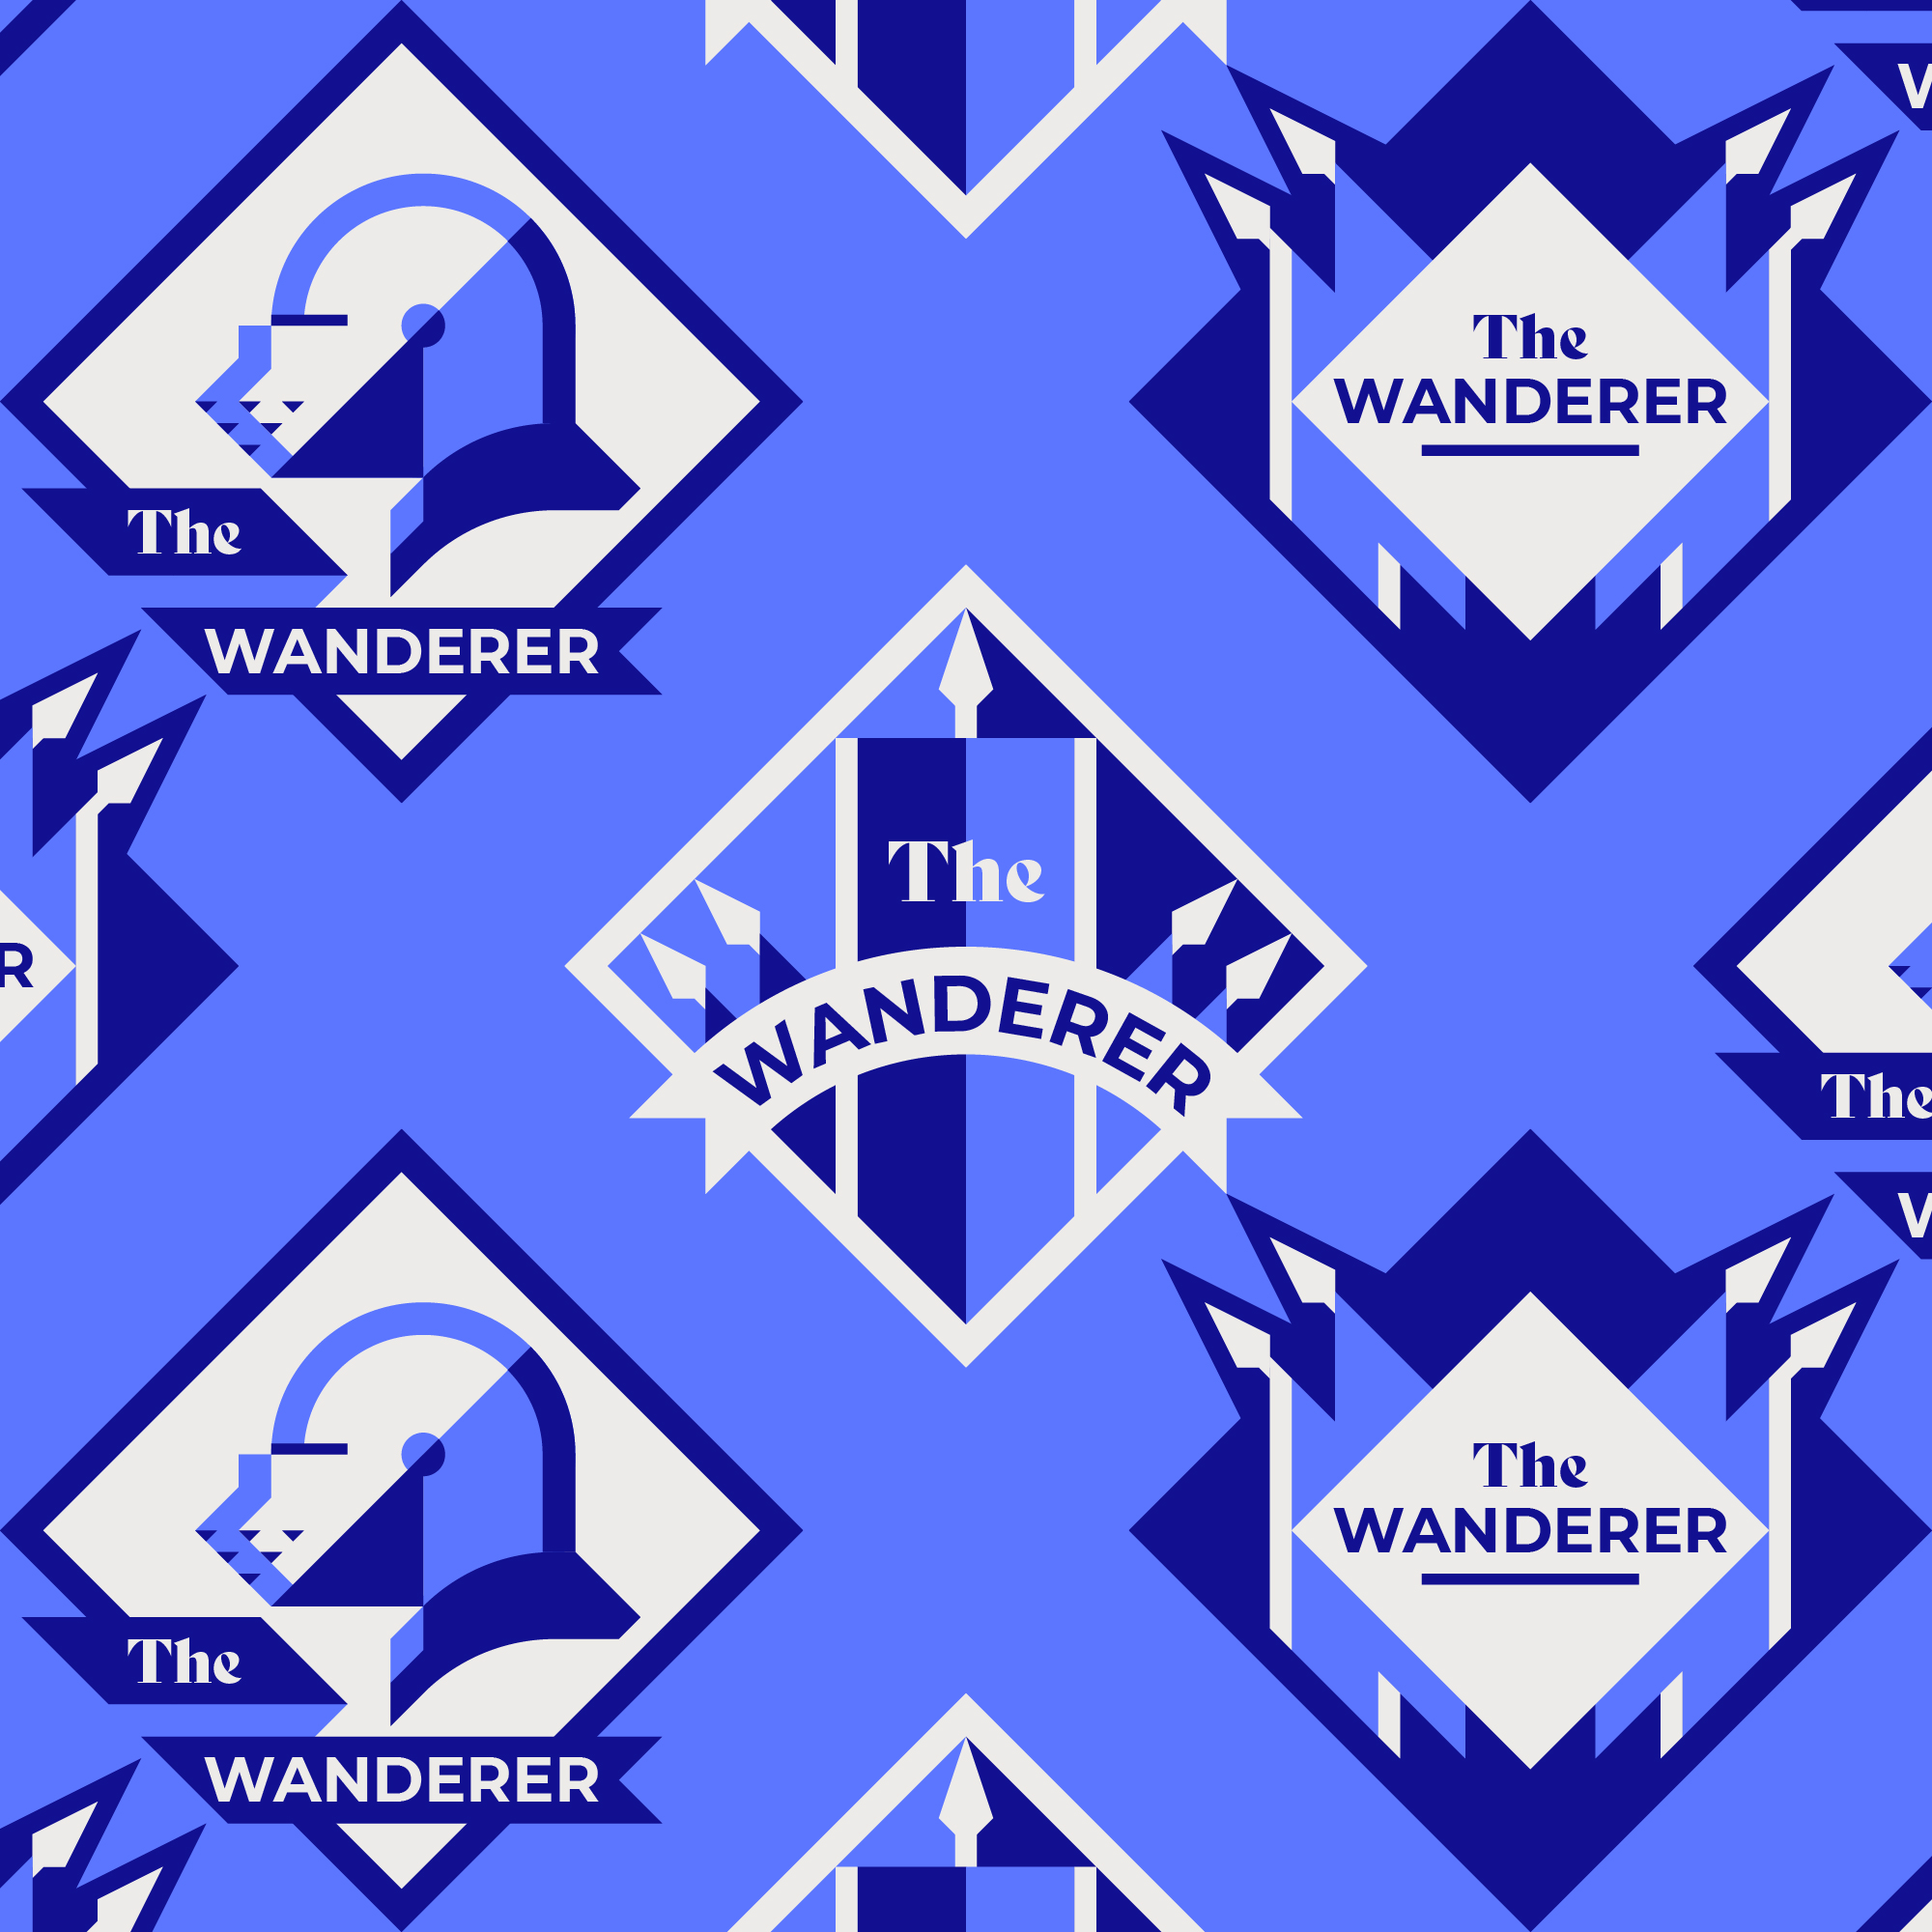 Le logo de 'The Wanderer' pour taverne, représente un chevalier errant à cheval.